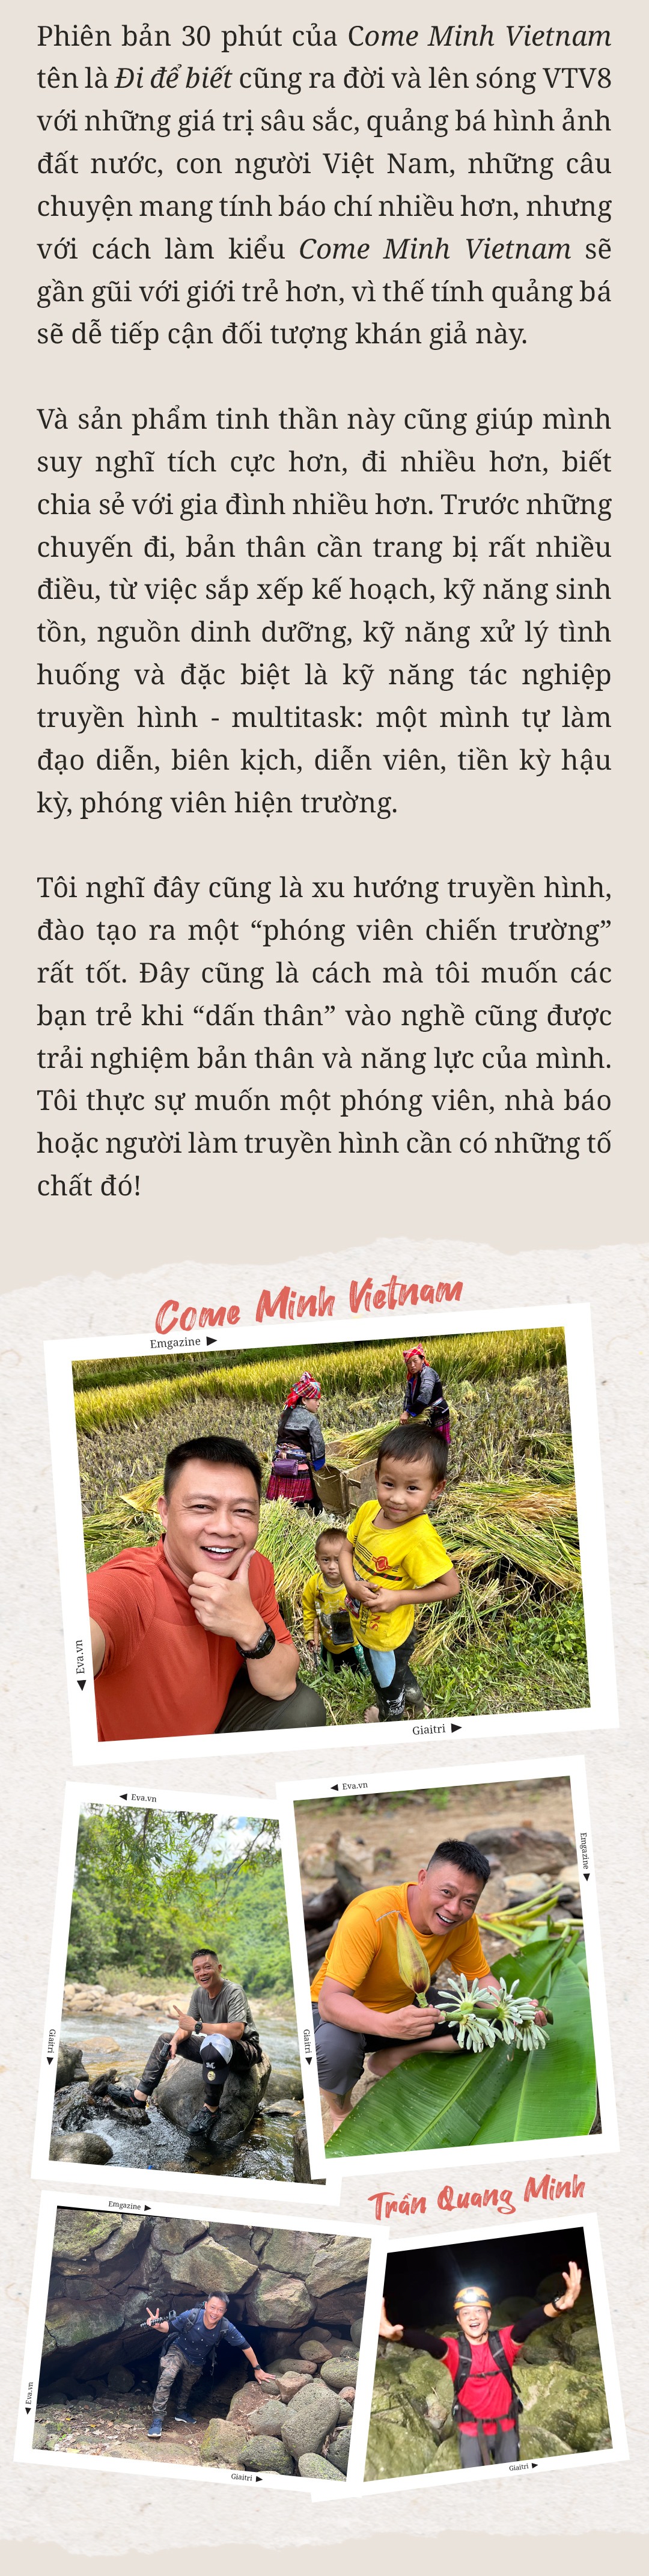 MC Trần Quang Minh: amp;#34;Nếu mừng tuổi ít, các con thấy buồn một thì mình tủi thân mườiamp;#34; - 12